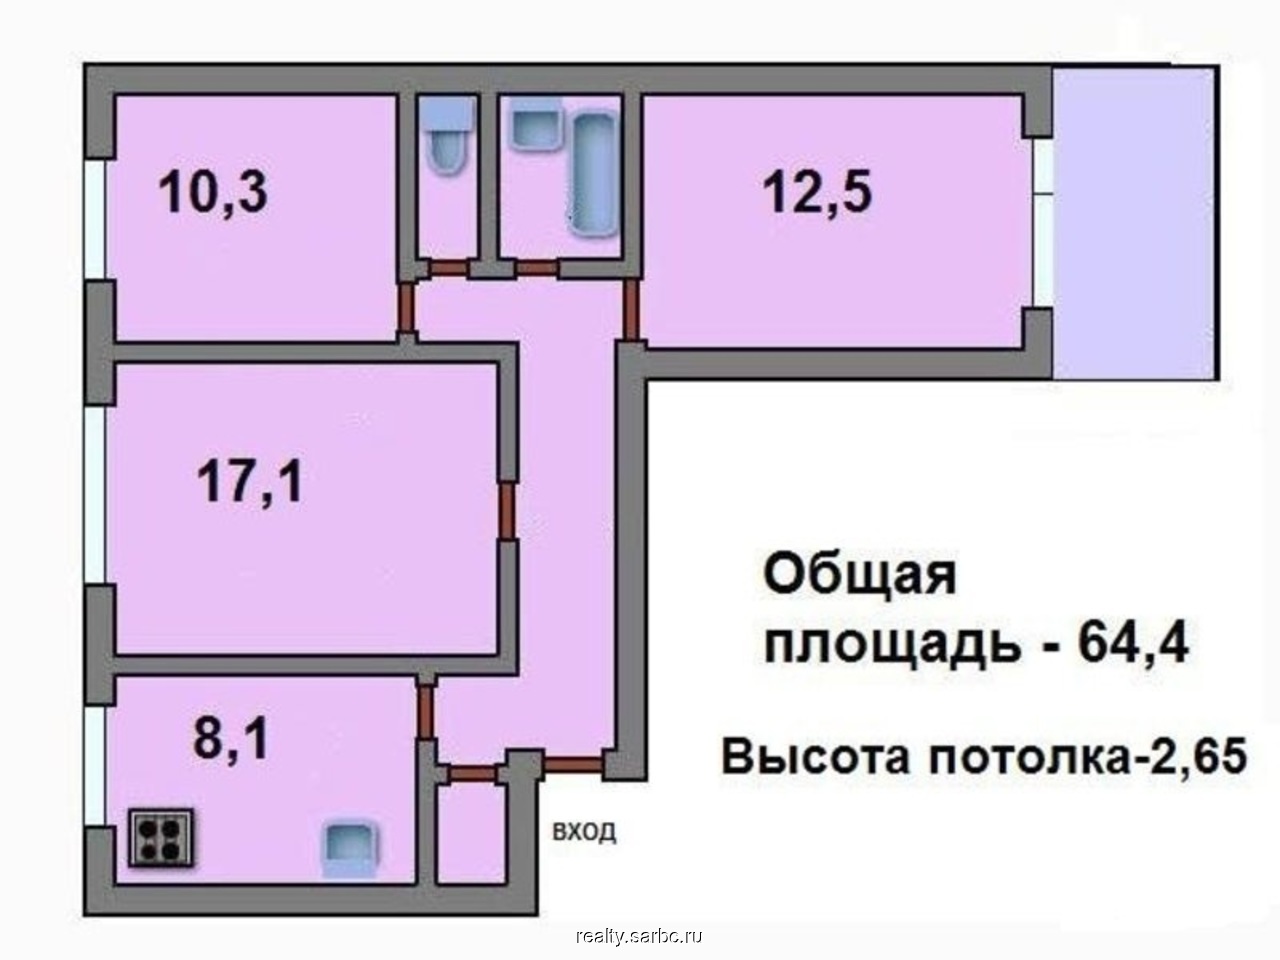 3х комнатная квартира кургане. Планировка 1-515 трехкомнатная. Планировка 3-х комнатной квартиры в панельном доме. I-515/9ш планировка двушки. Планировка 3х комнатной квартиры 90кв.